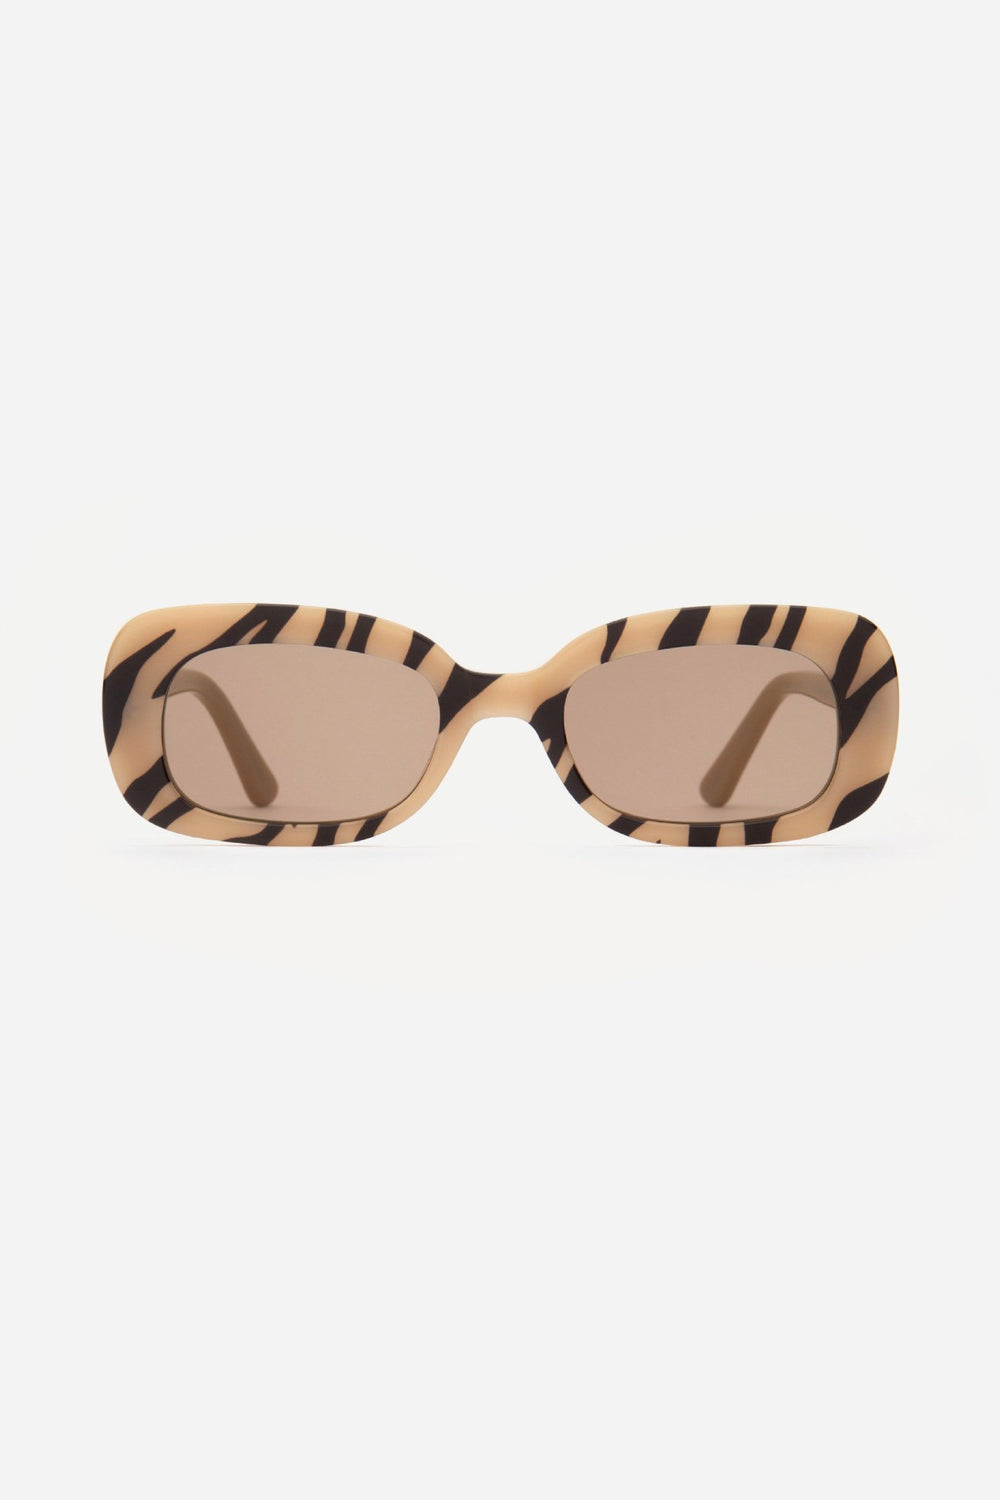 Tan El Tigre Sunglasses